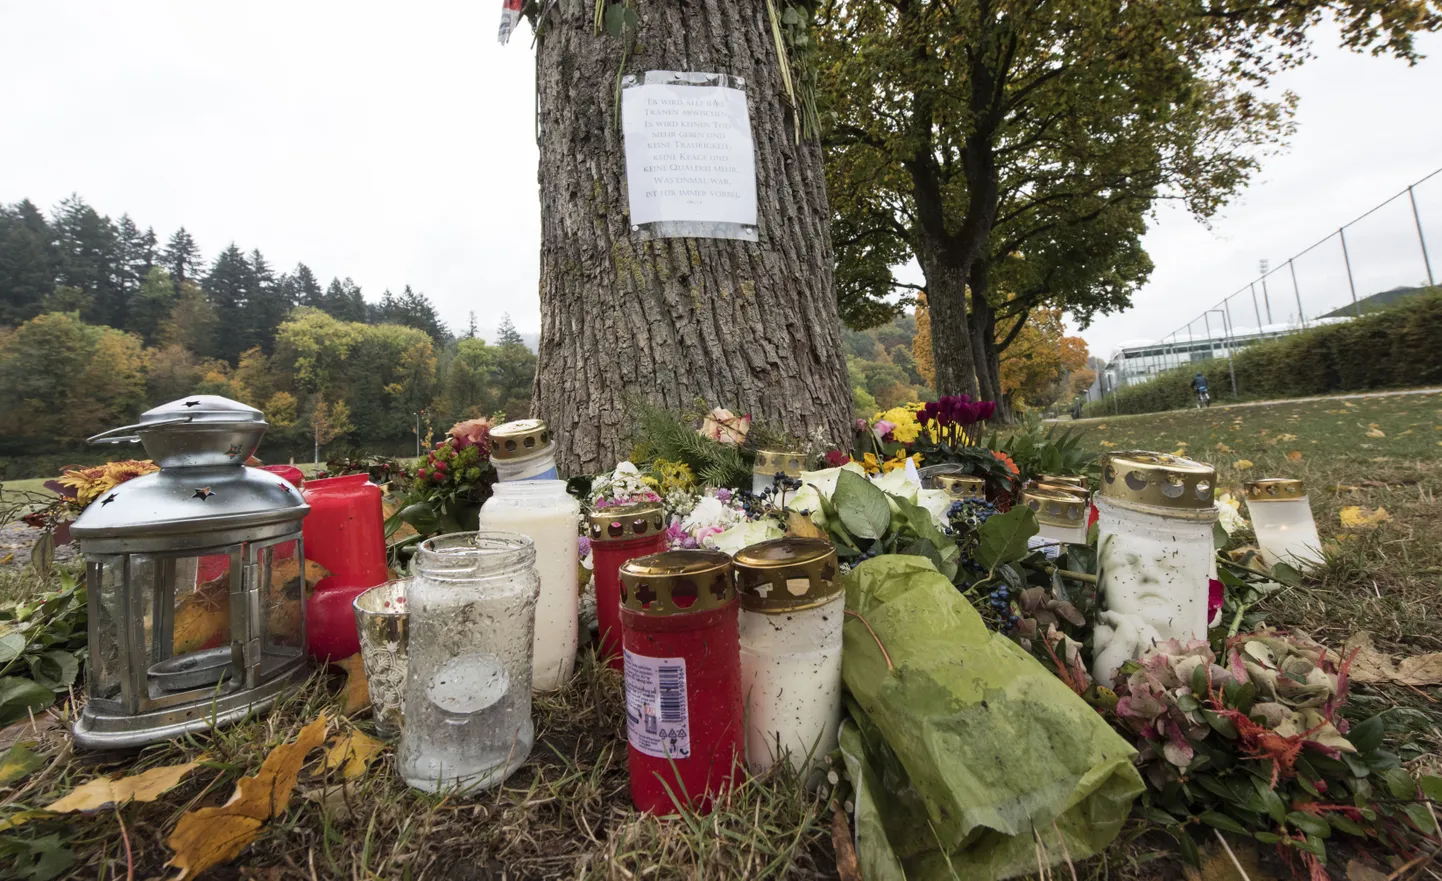 Dreisami jõe lähedal asuv paik Freiburgis, kust oktoobris leiti üliõpilase surnukeha.